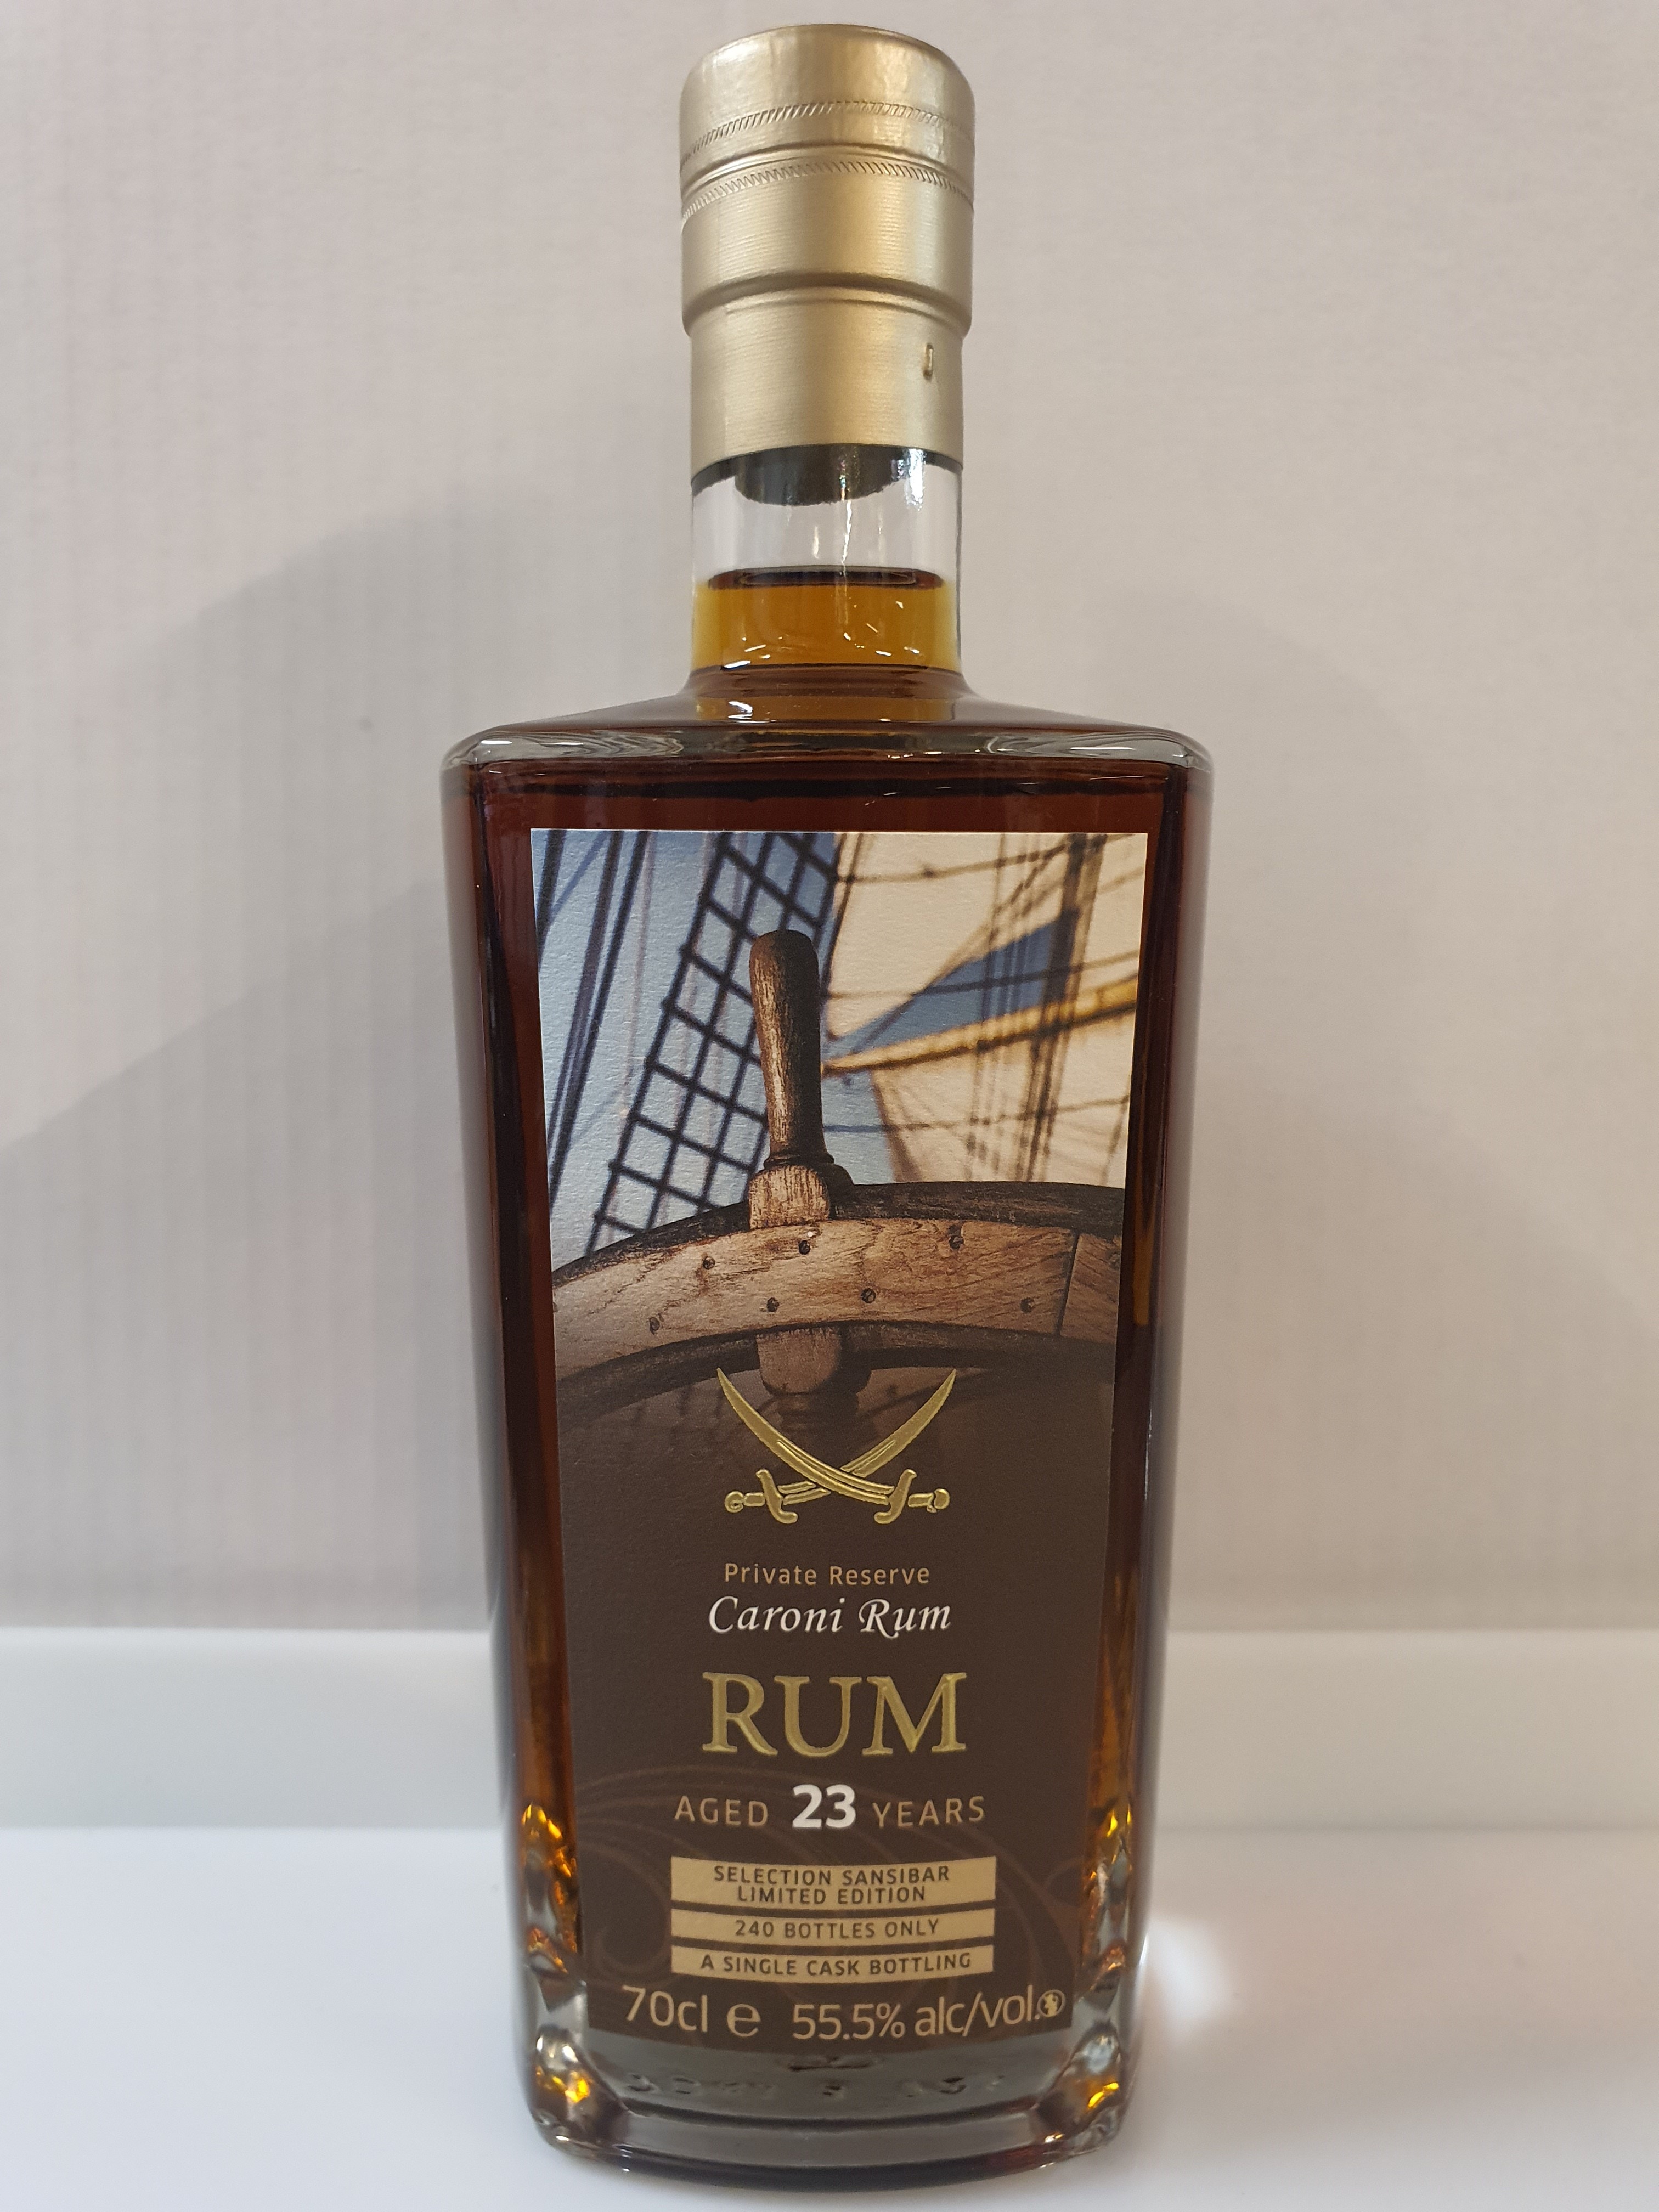 Trinidad Rum (Caroni Distillery) - Pirat Label